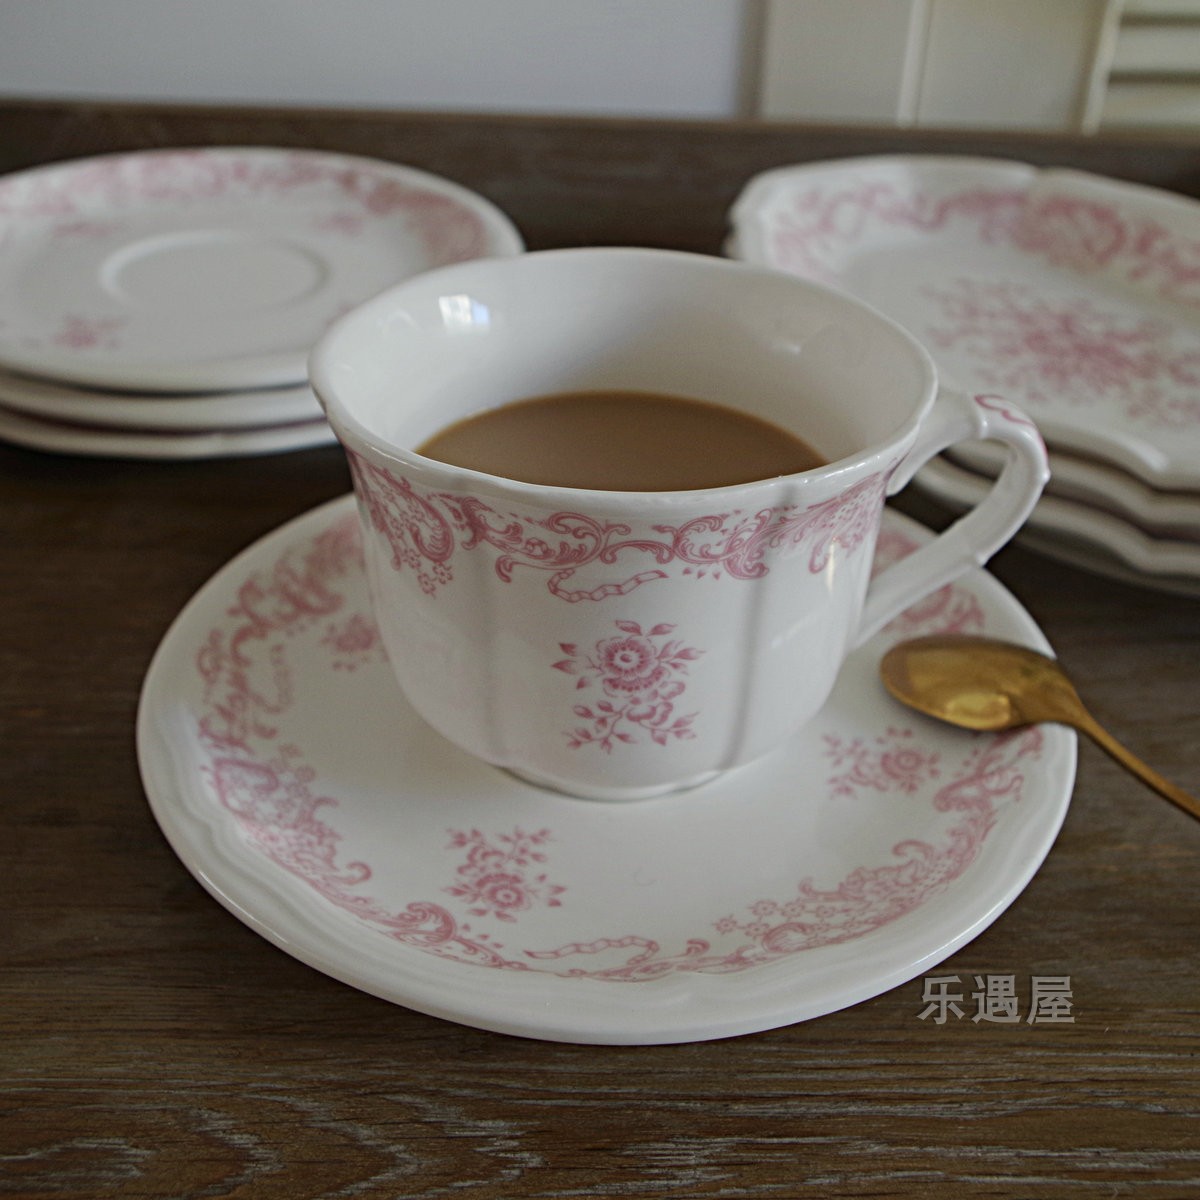 法式乡村 唯美中古风粉色花卉陶瓷咖啡杯碟 复古下午茶花茶杯碟